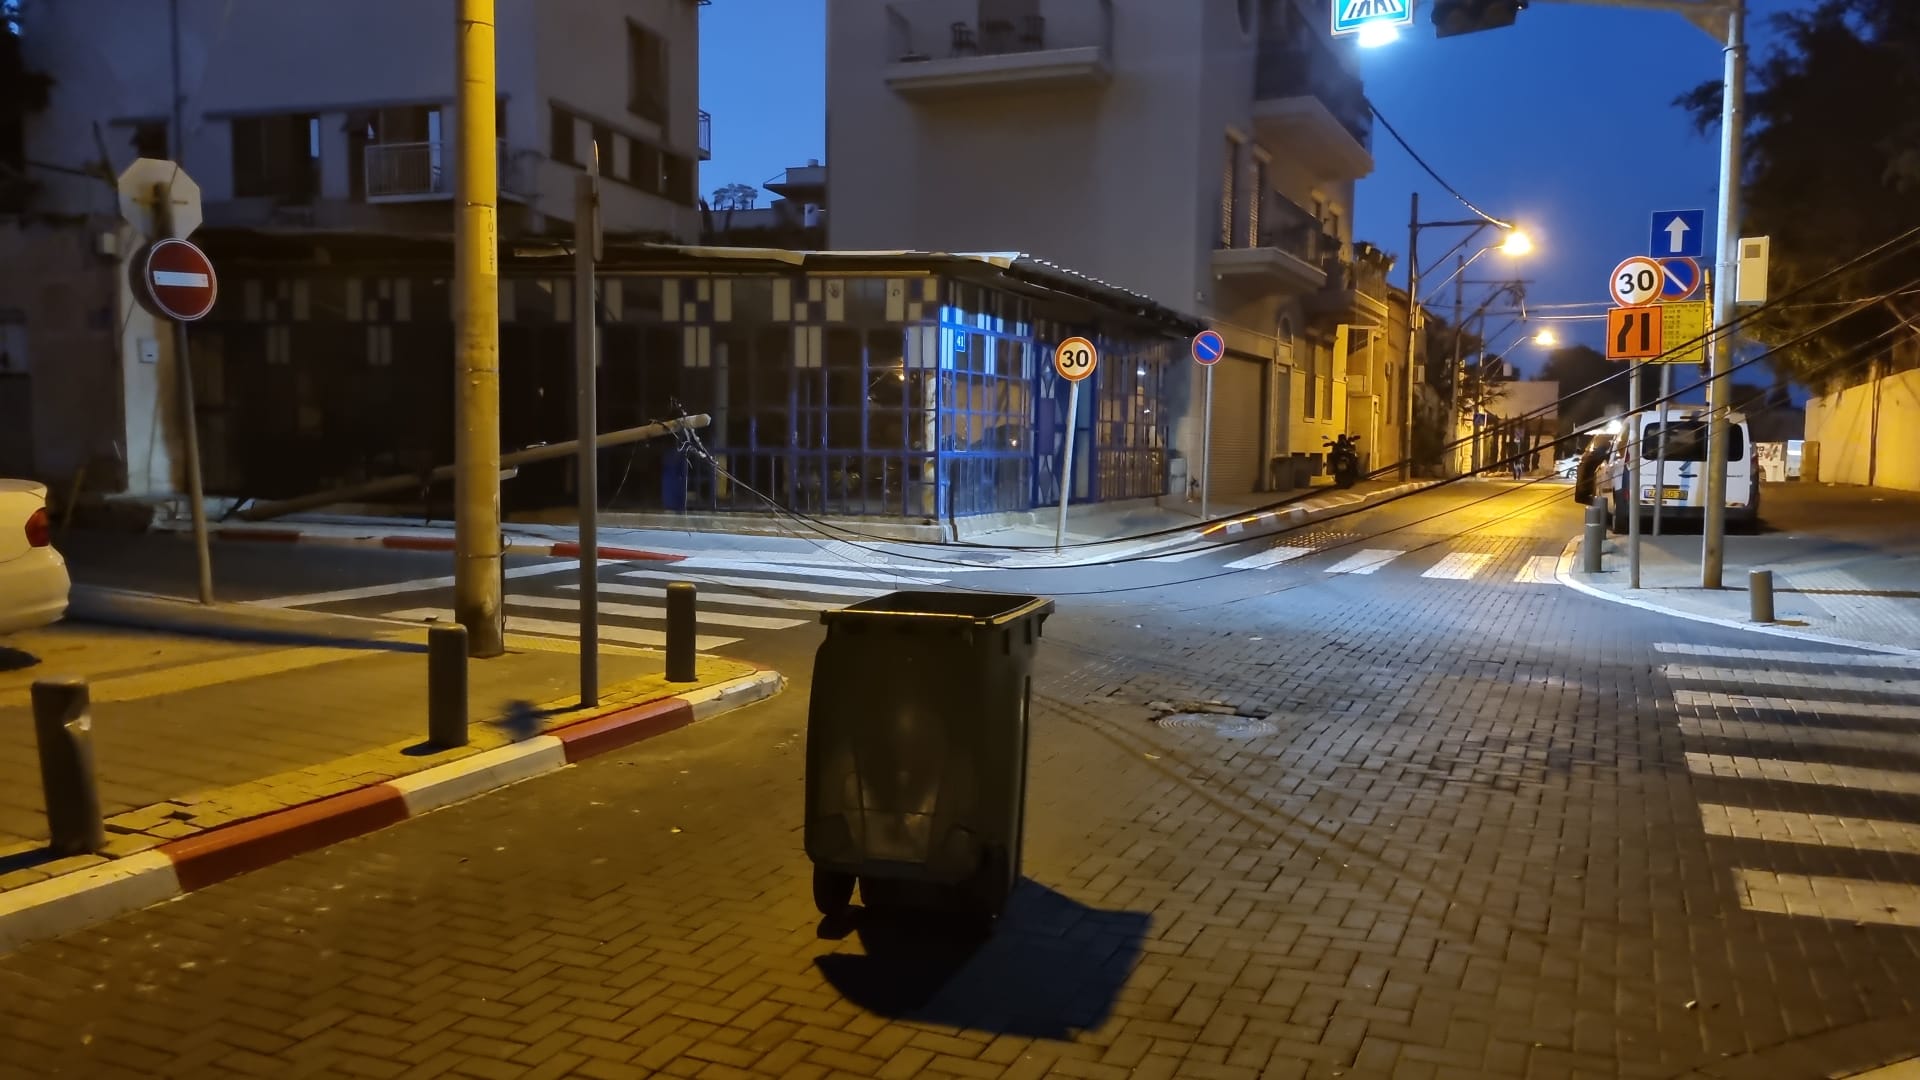 فجر الجمعة: شاحنة تصطدم بعامودي كهرباء وهاتف في شارع كيديم والجمهور مطالب بتوخي الحذر